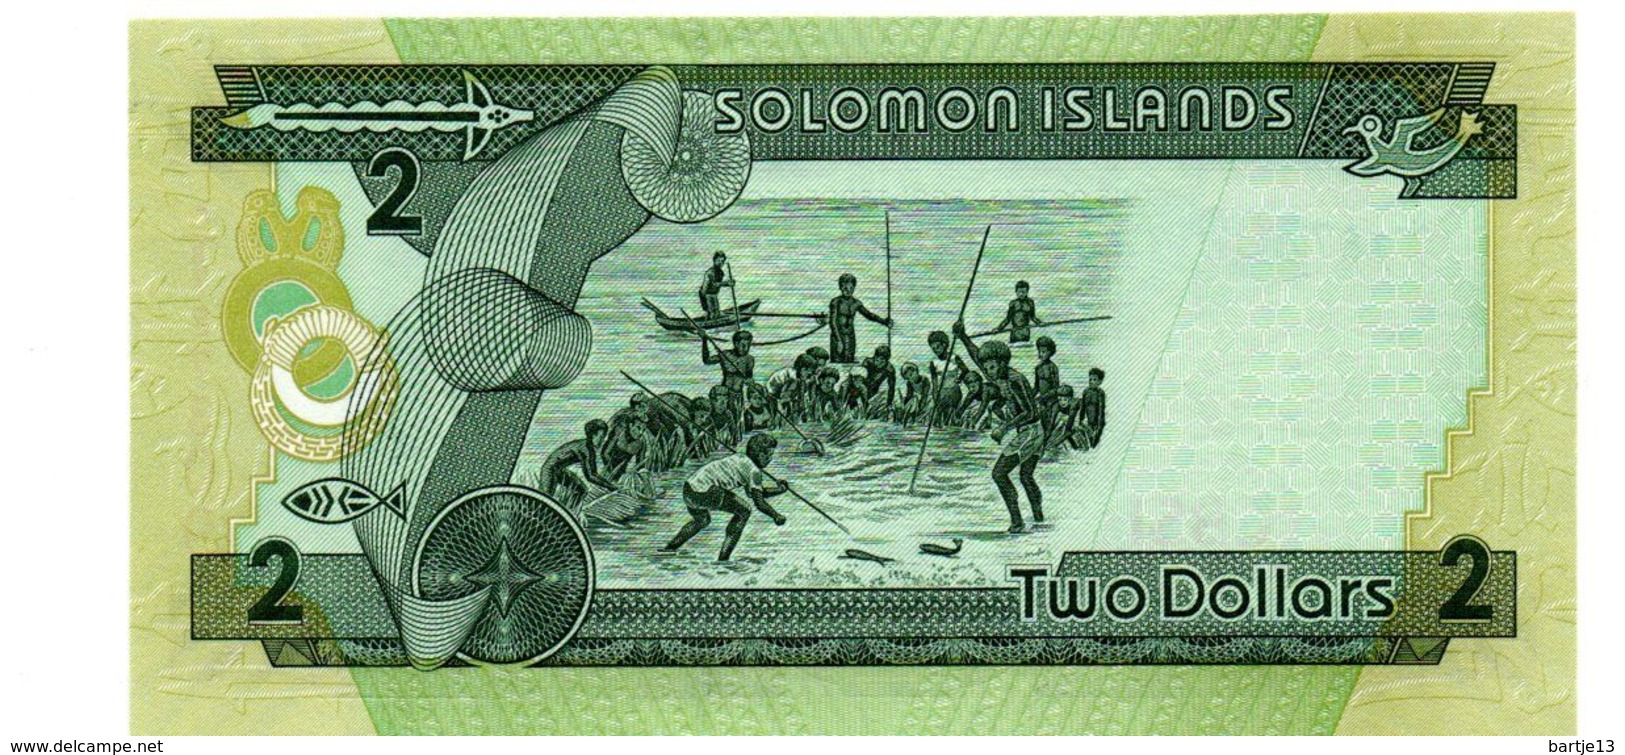 SOLOMON ISLANDS 2 DOLLARS PICK 18 UNCIRCULATED POLYMEER - Solomon Islands